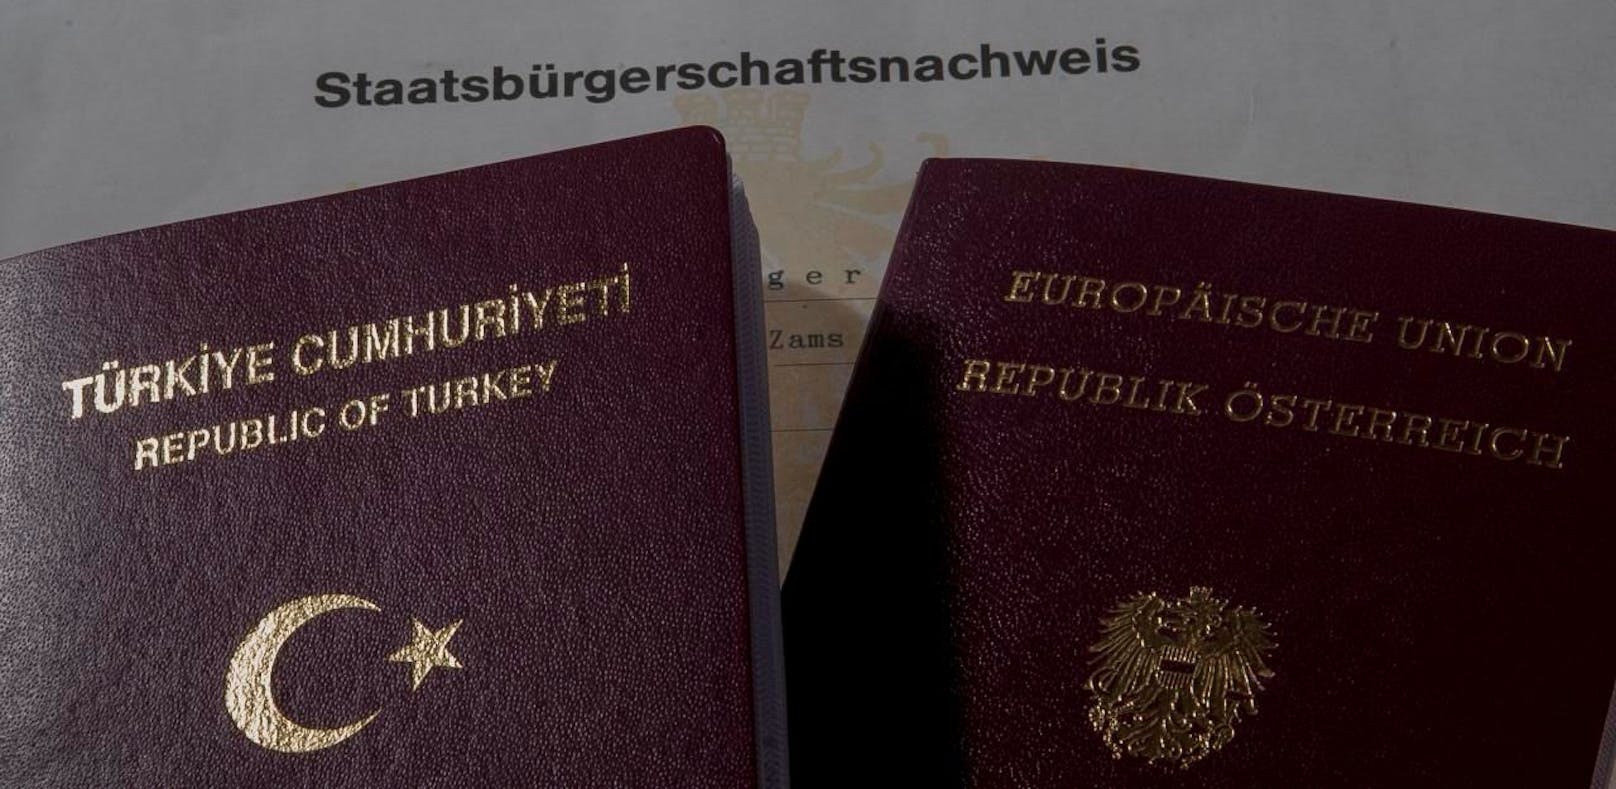 Weiteren 15 Personen wird die österreichische Staatsbürgerschaft entzogen.